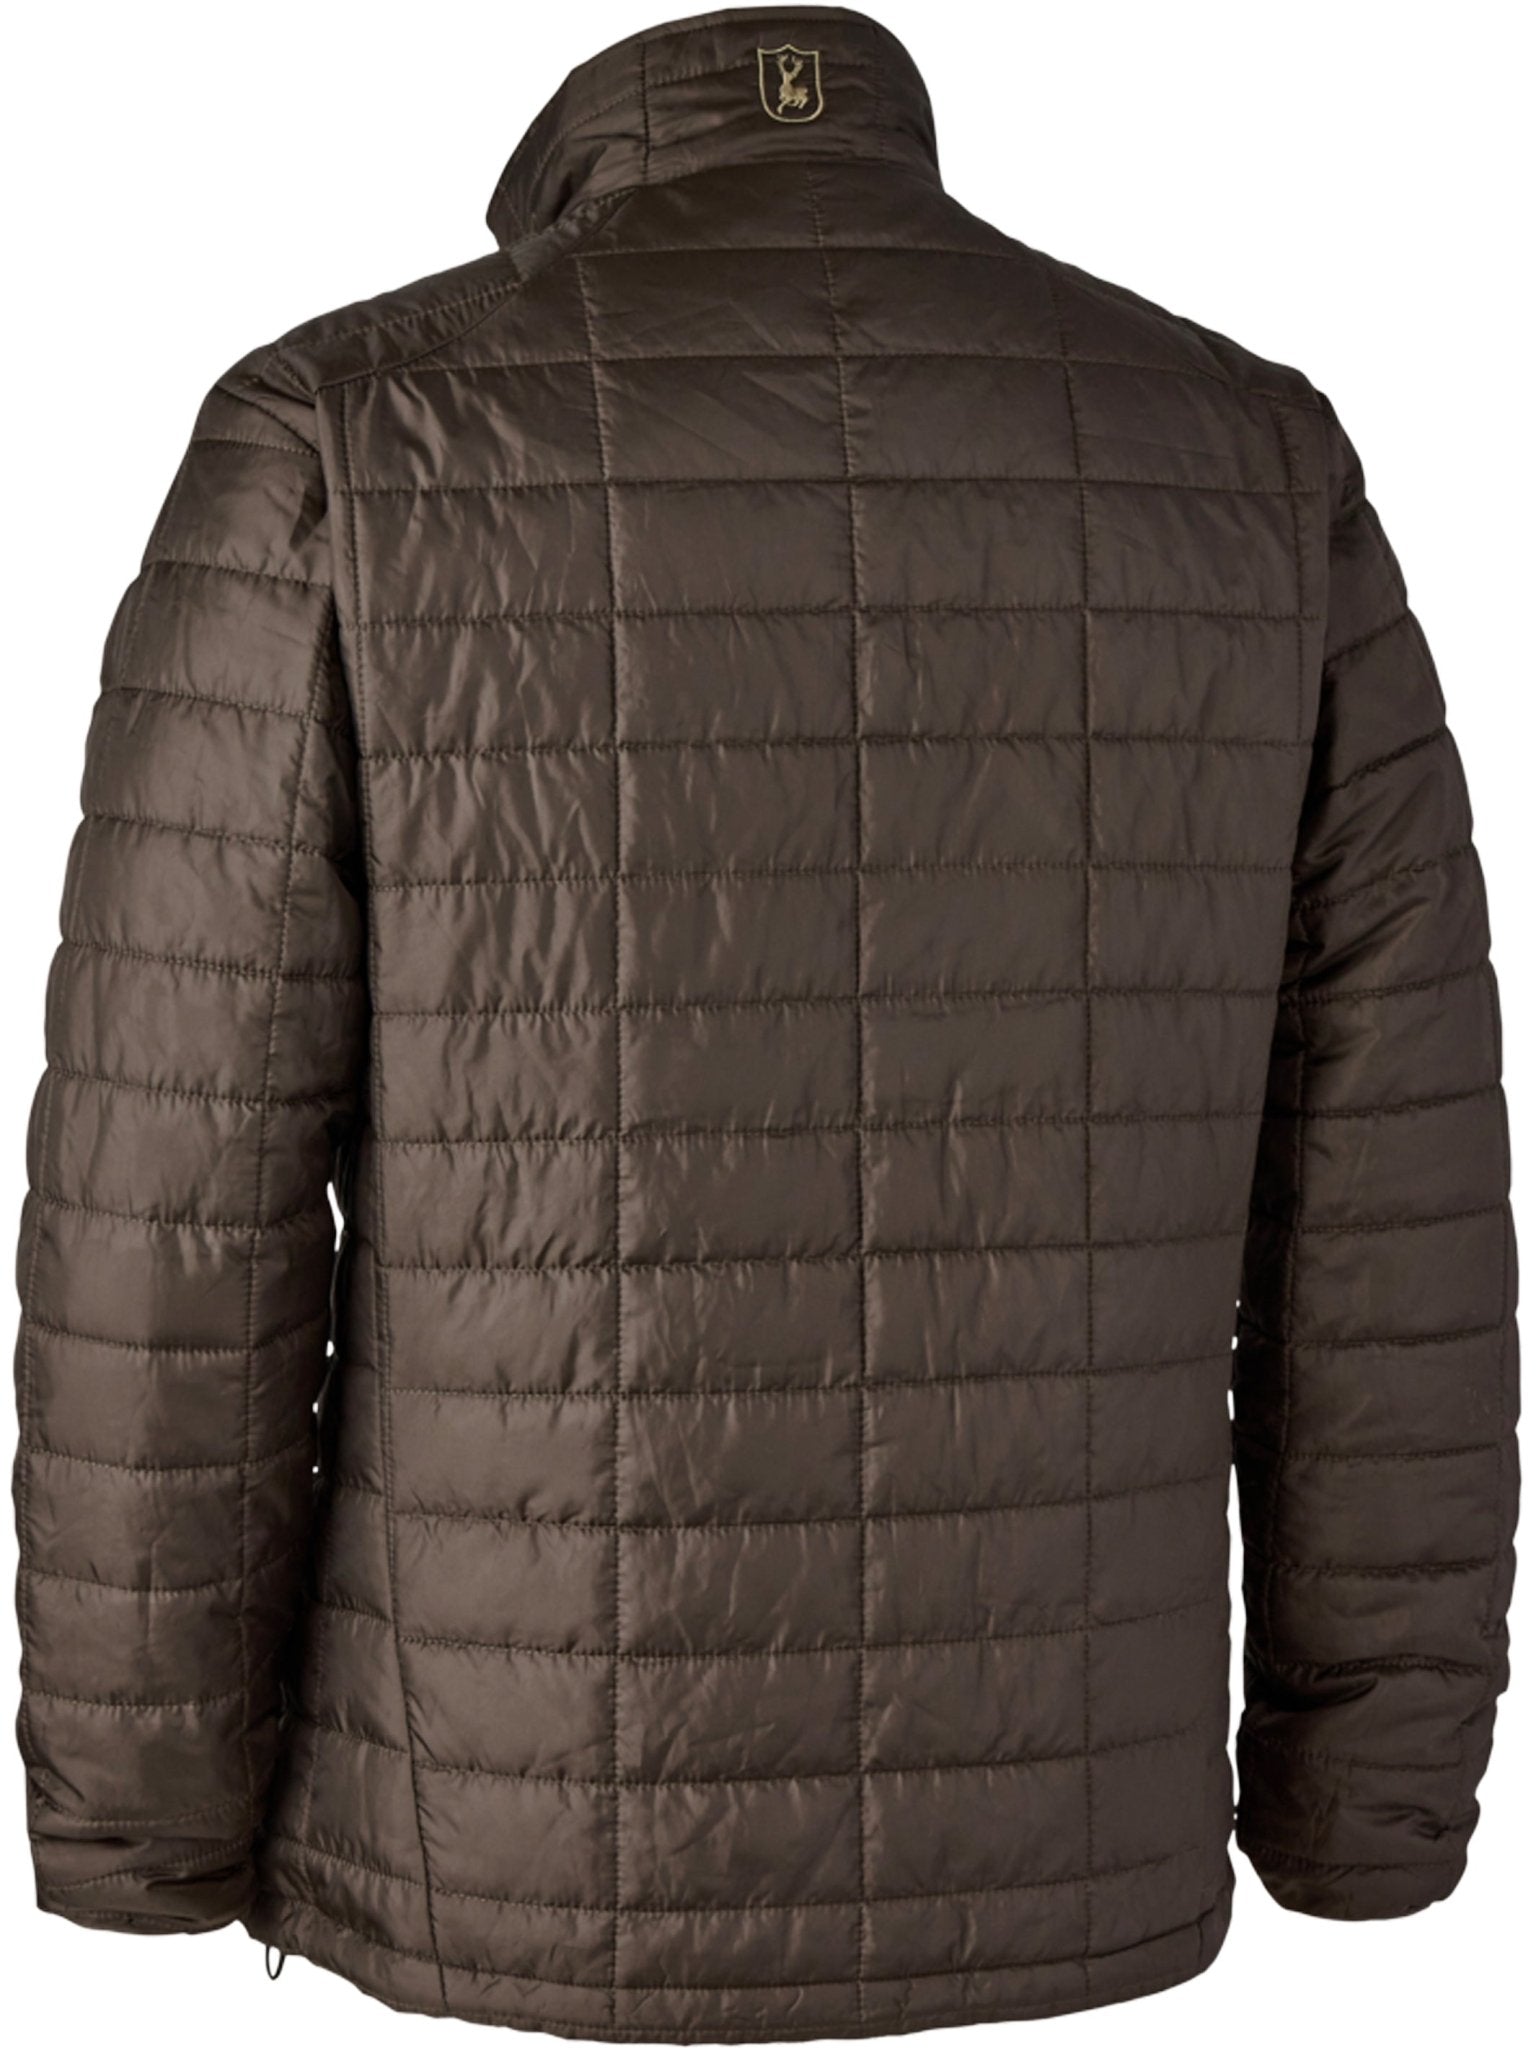 4elementsclothingDeerhunterDeerhunter - Muflon Packable jacket - lightweight, insulated, water repellent coatOuterwear5974-585-S